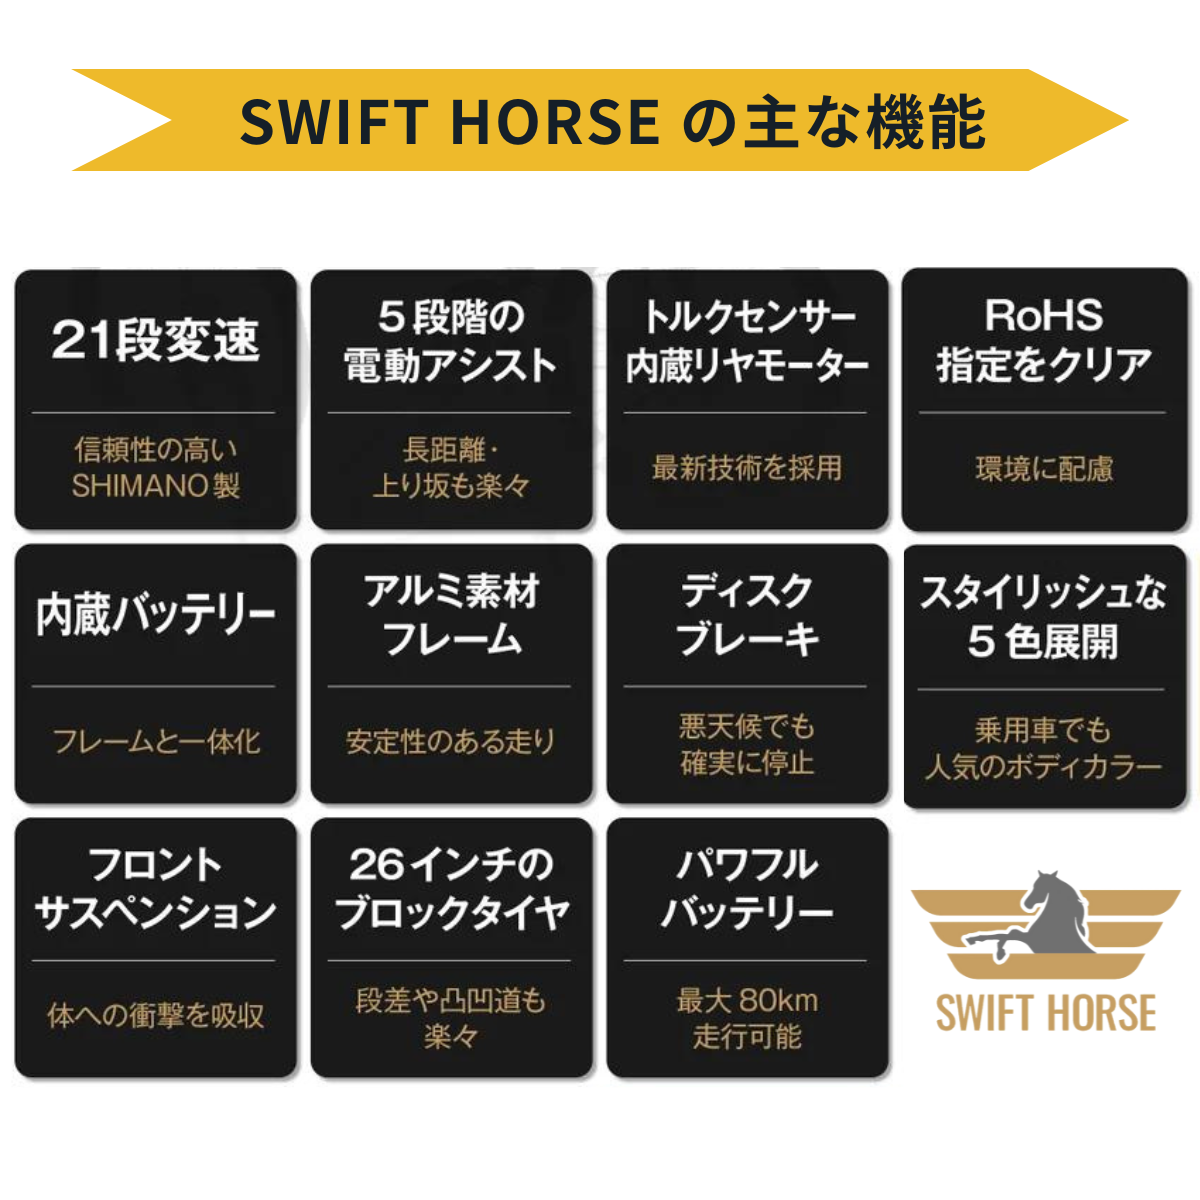 マウンテンバイク×電動アシスト自転車 SWIFT HORSE ★5段階アシスト×21段変速 （フェンダー・キャリア同梱）